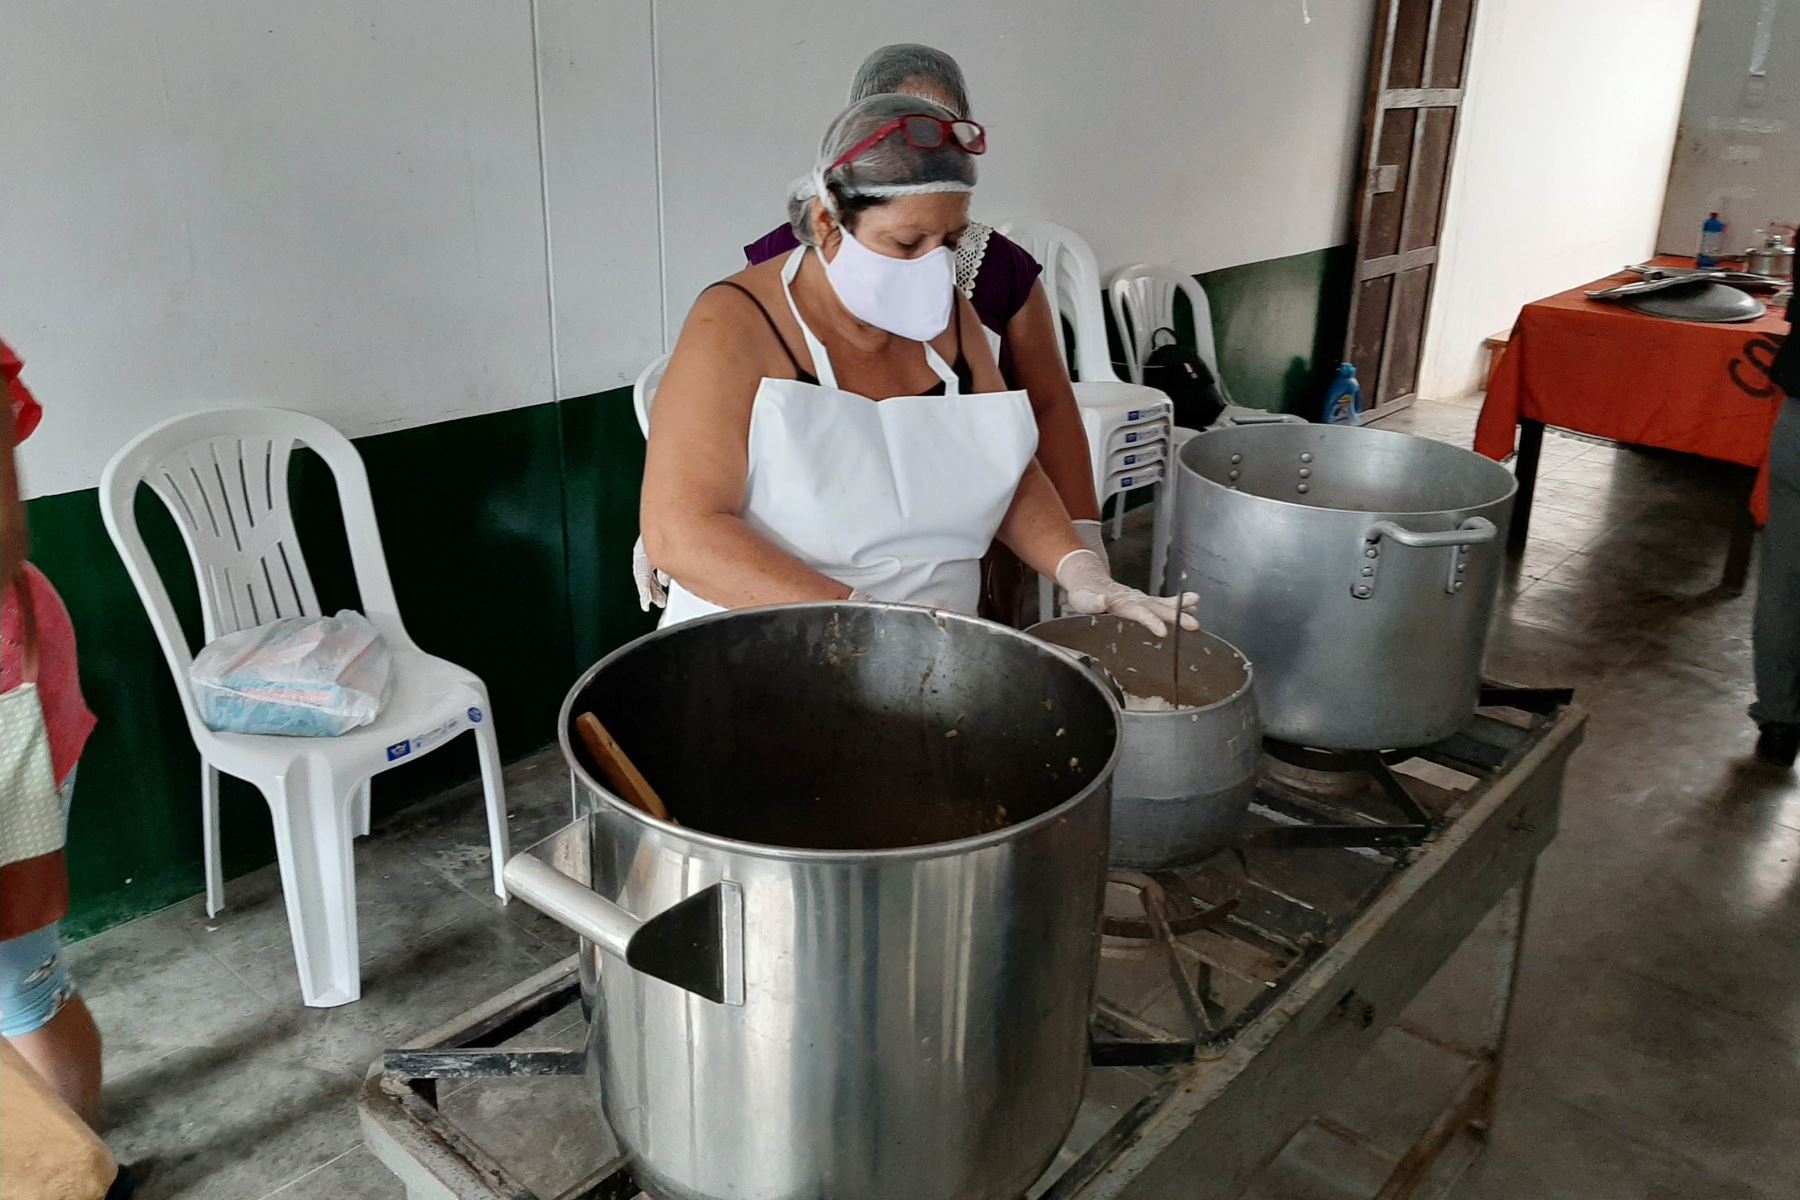 Alrededor de 6,600 personas en situación vulnerable de la provincia de Trujillo, región La Libertad, reciben almuerzo cada día. Foto: Cortesía Luis Puell